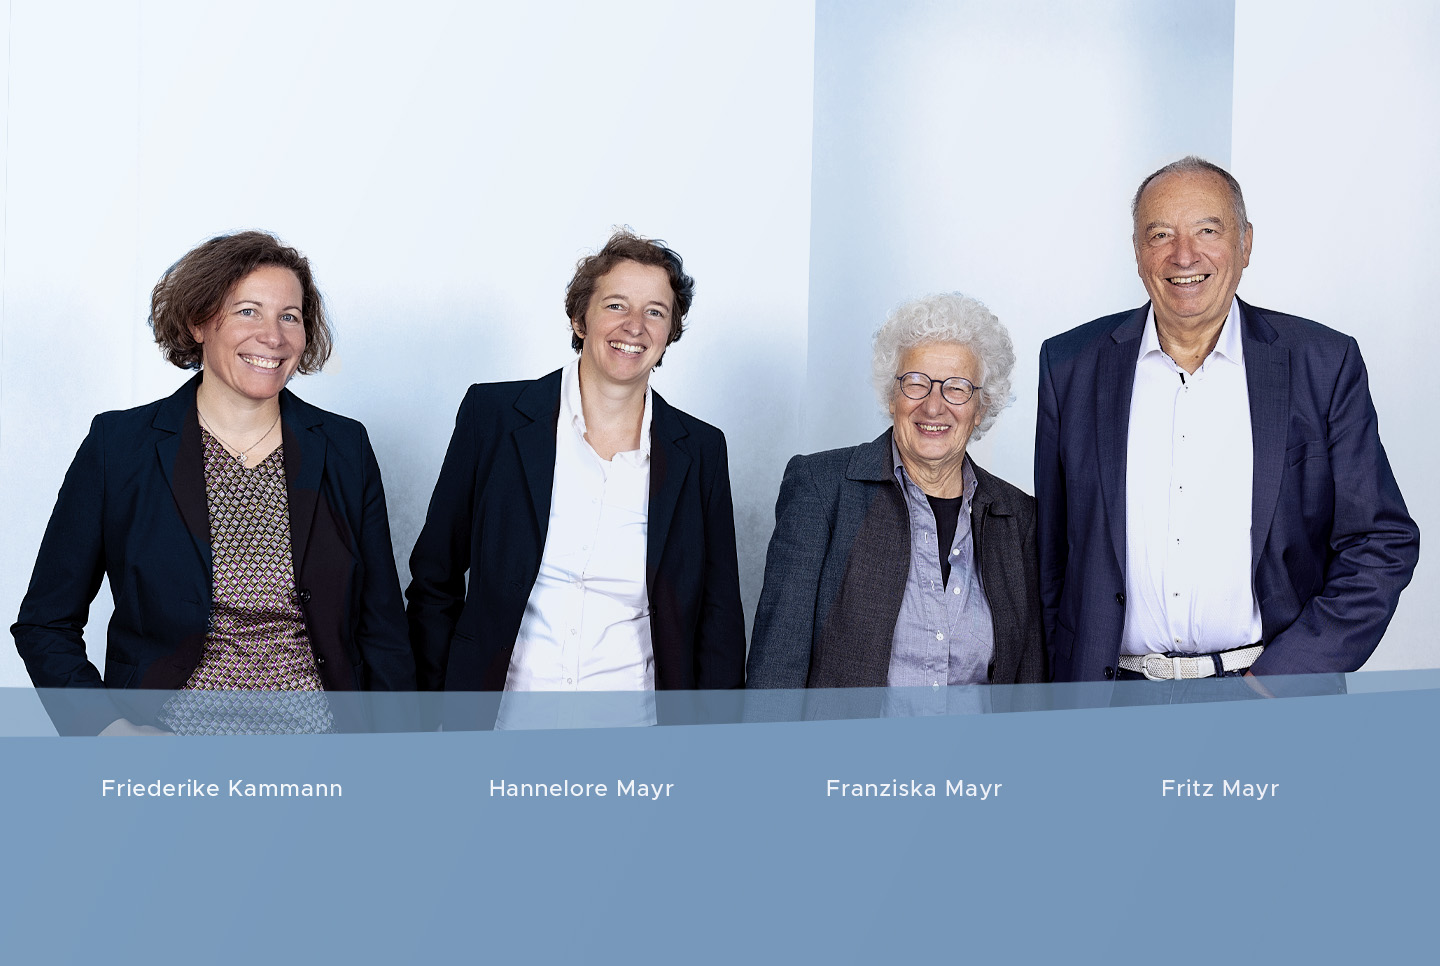 Bild v.l.n.r.: Friederike Kammann, Hannelore Mayr, Franziska Mayr, Fritz Mayr